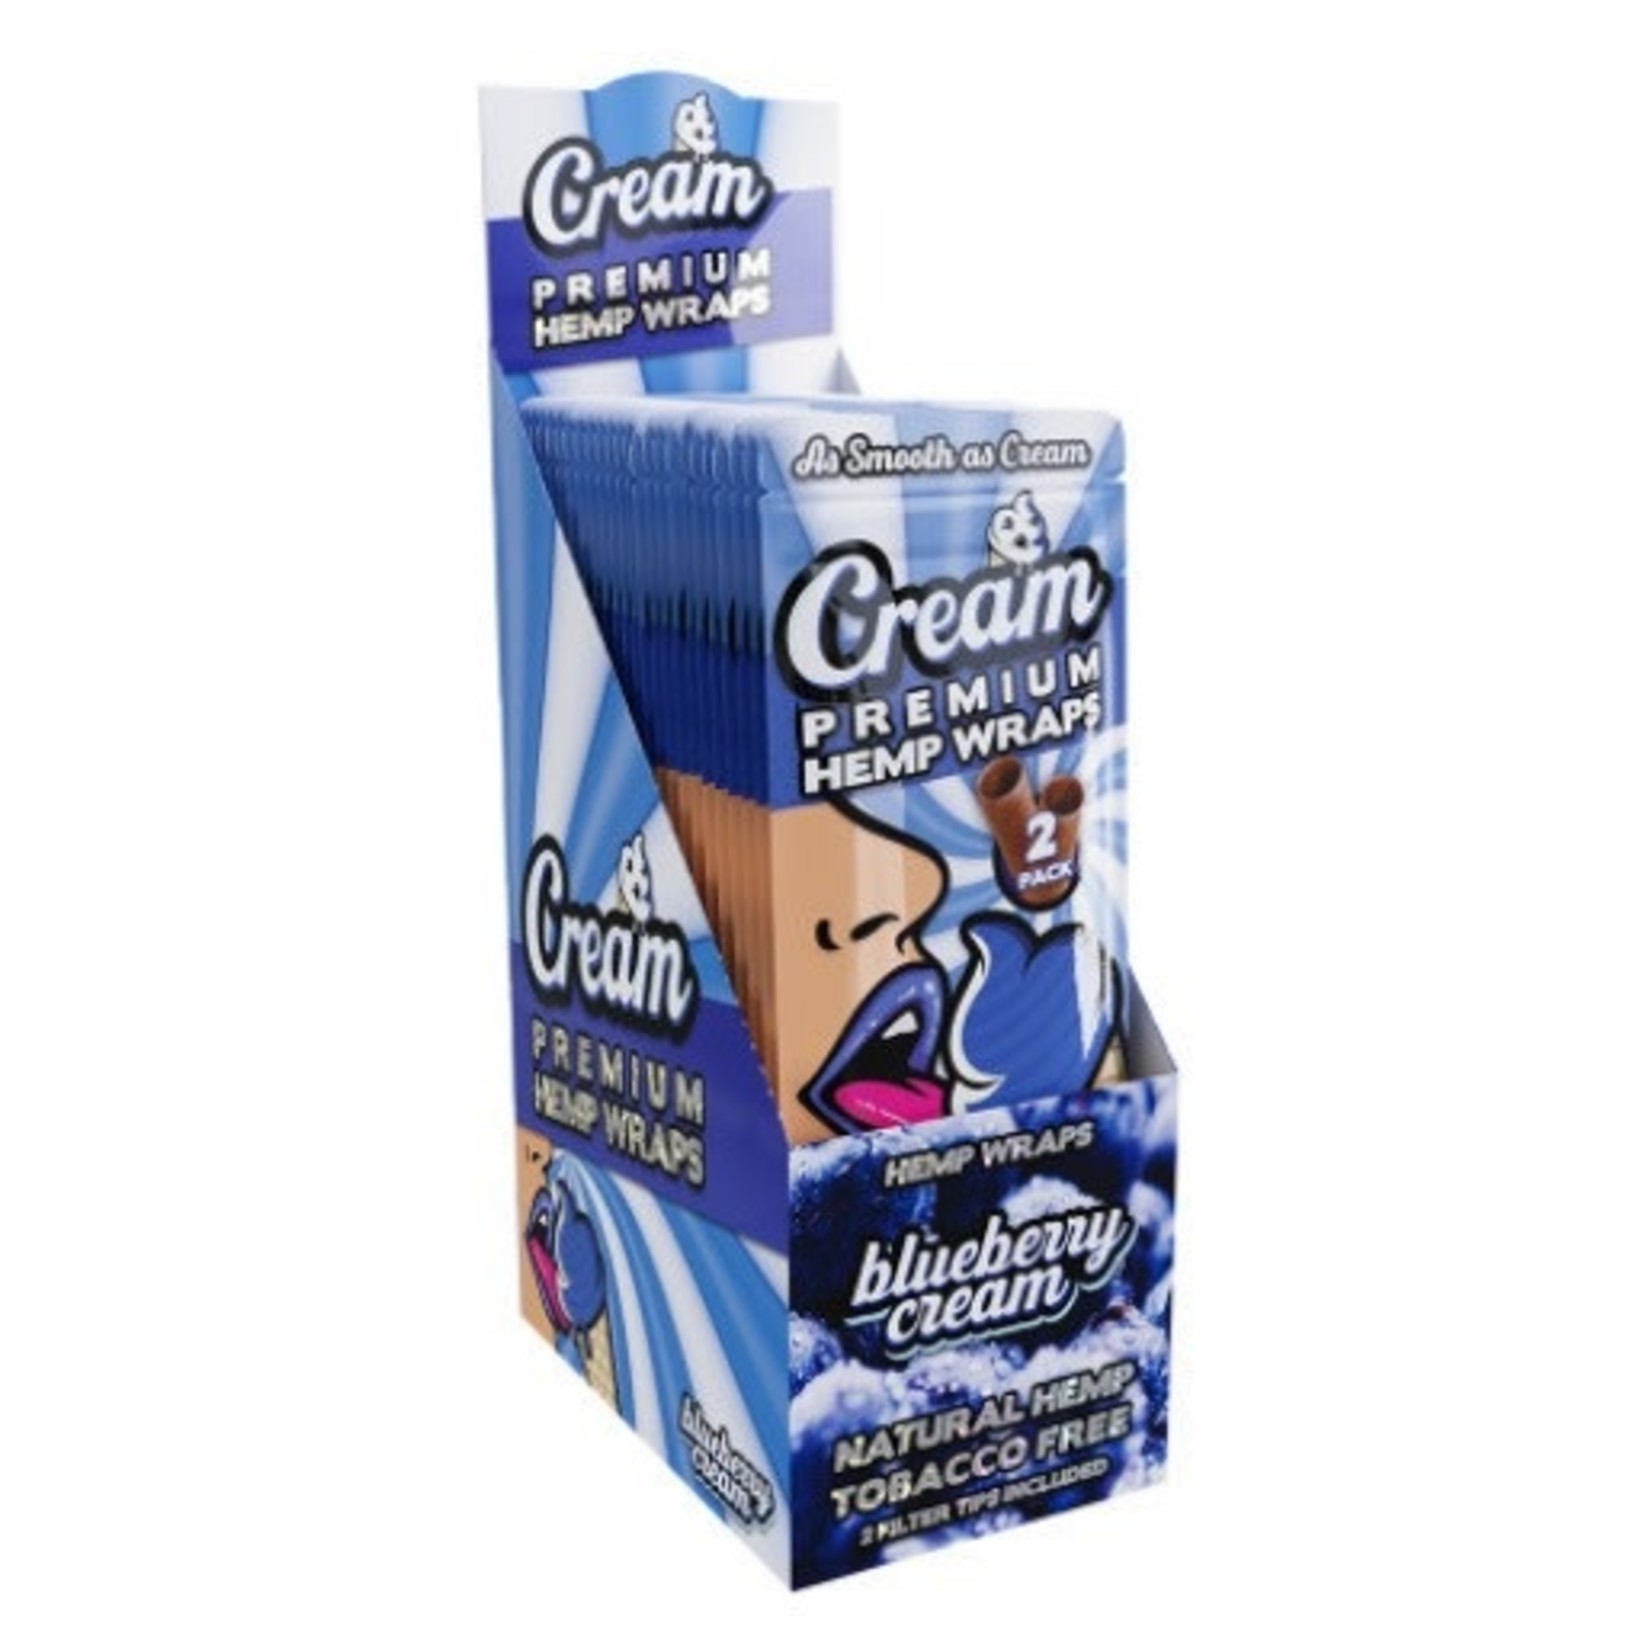 Cream Hemp Wraps Cream Premium Hemp Terpene Infused Wraps